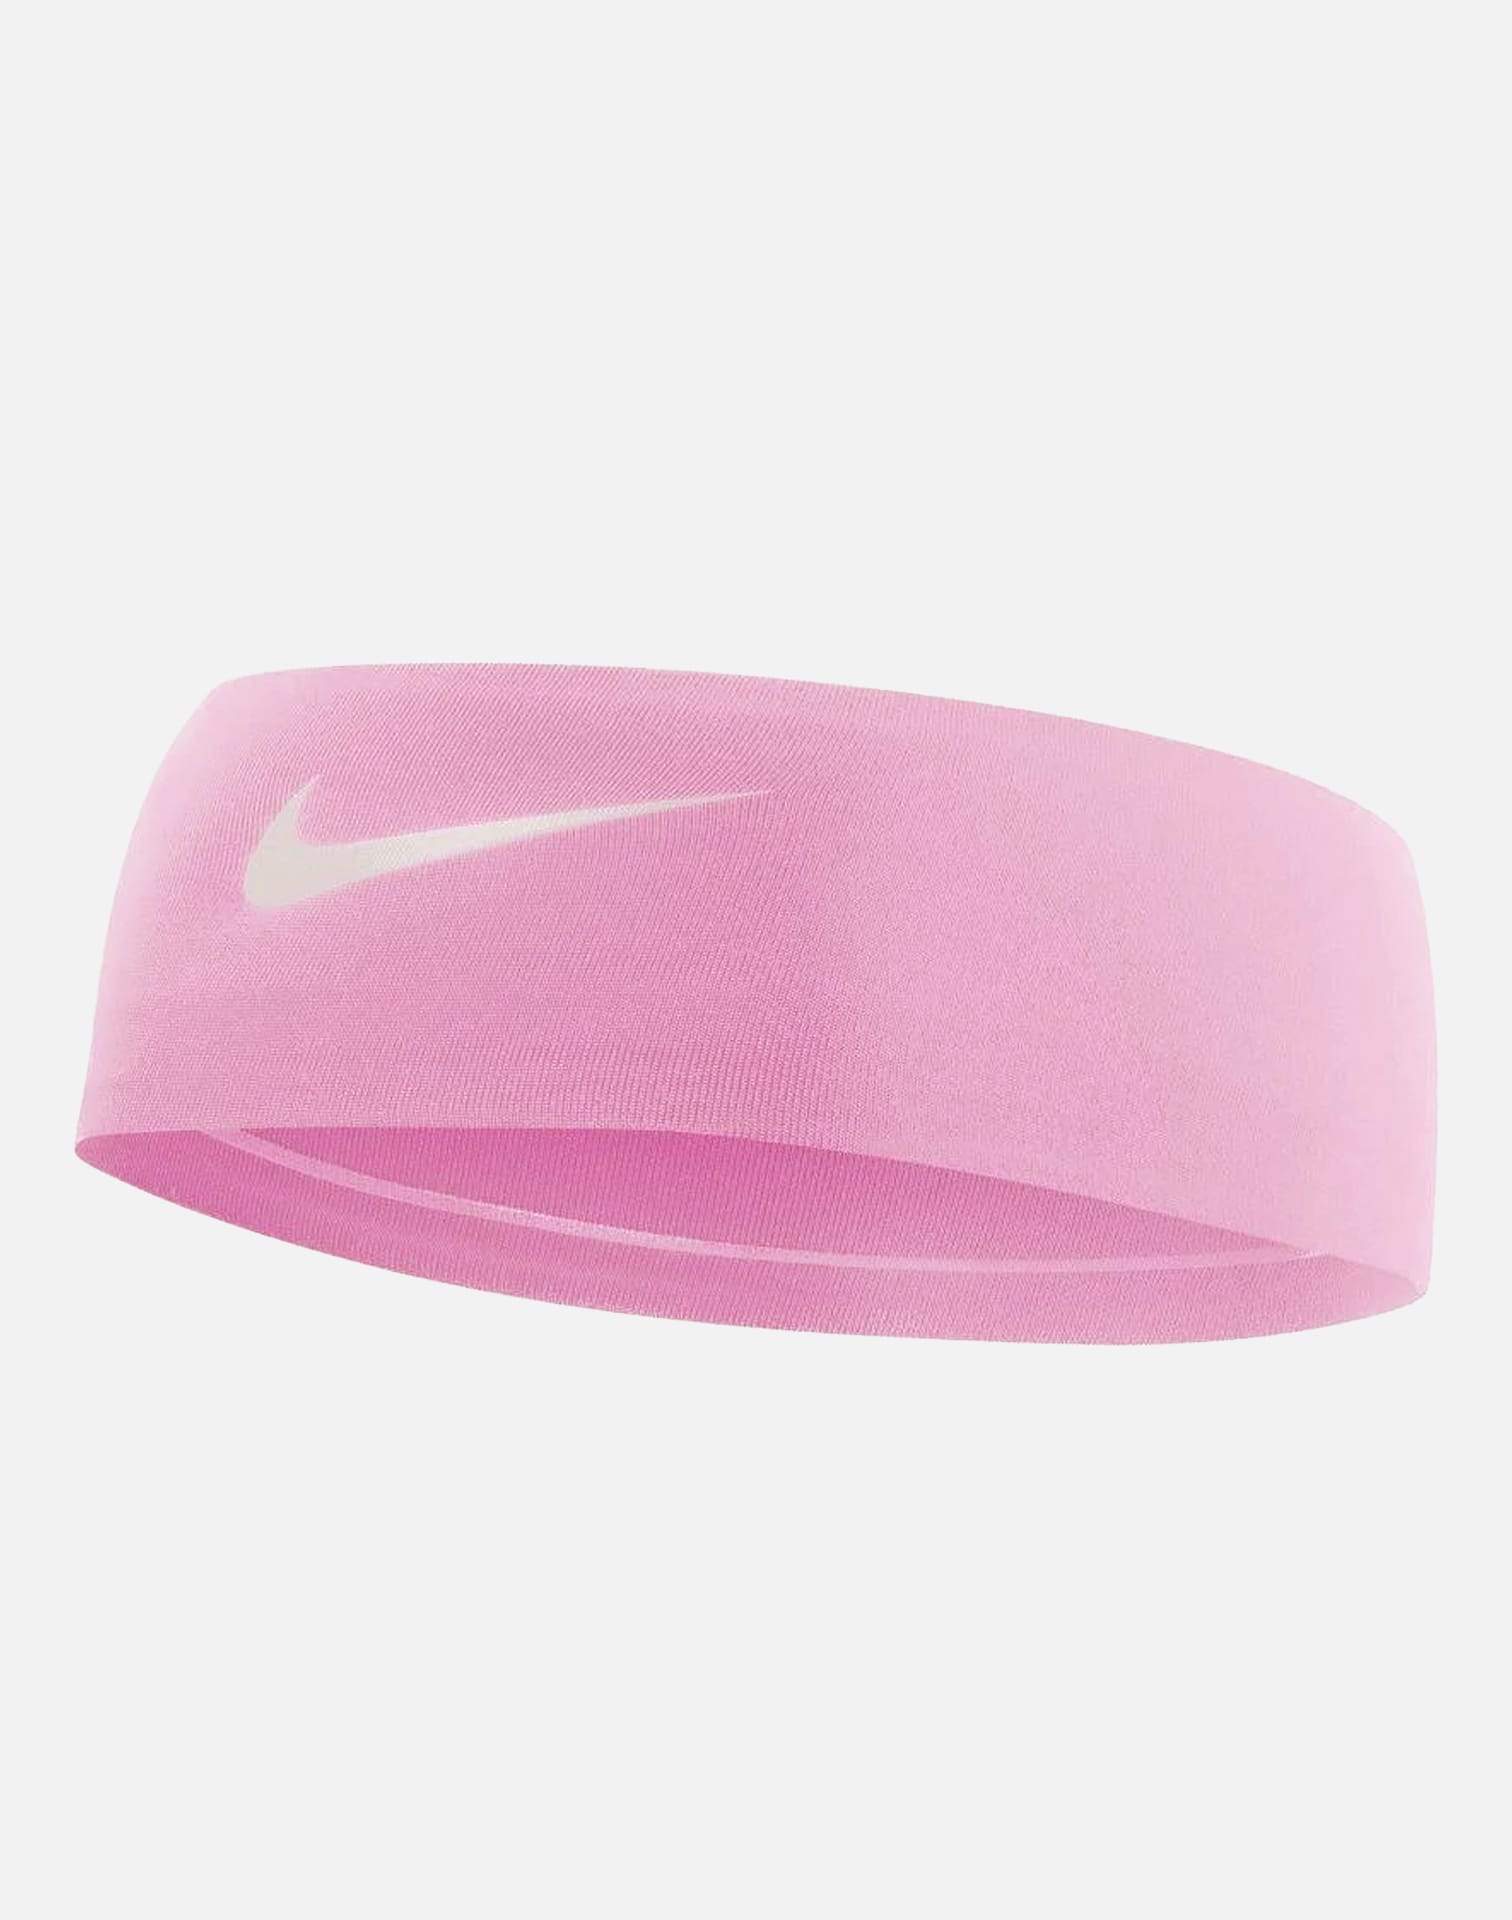 Nike Fury Headband 2.0